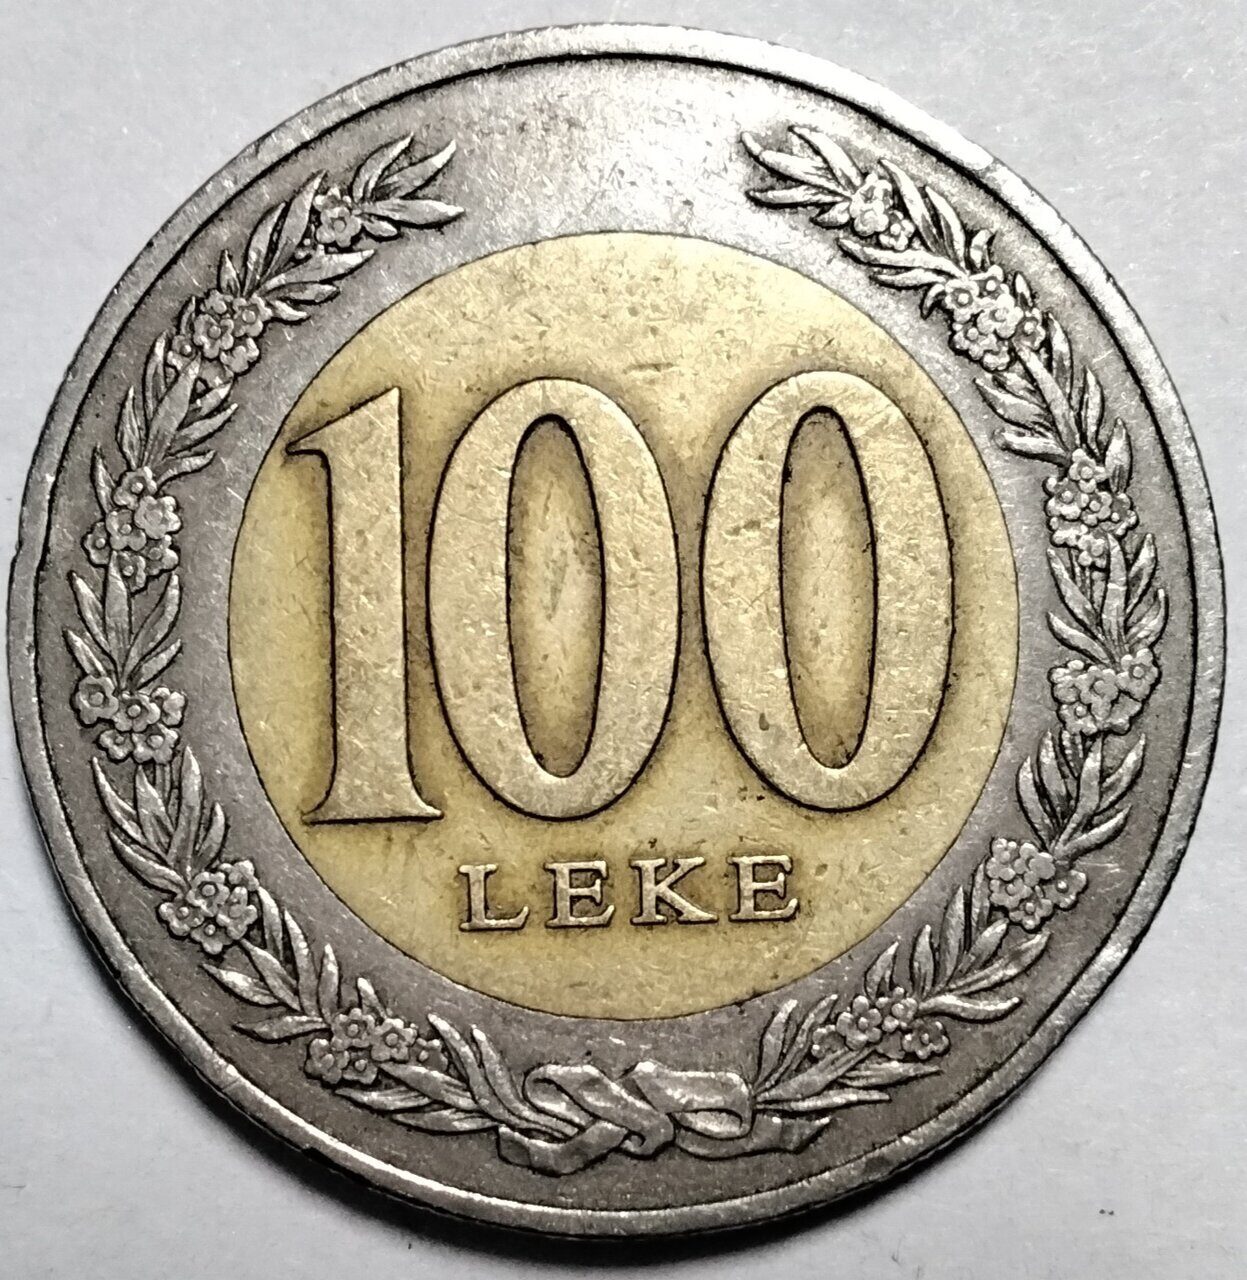 100 лек 2000 Албания